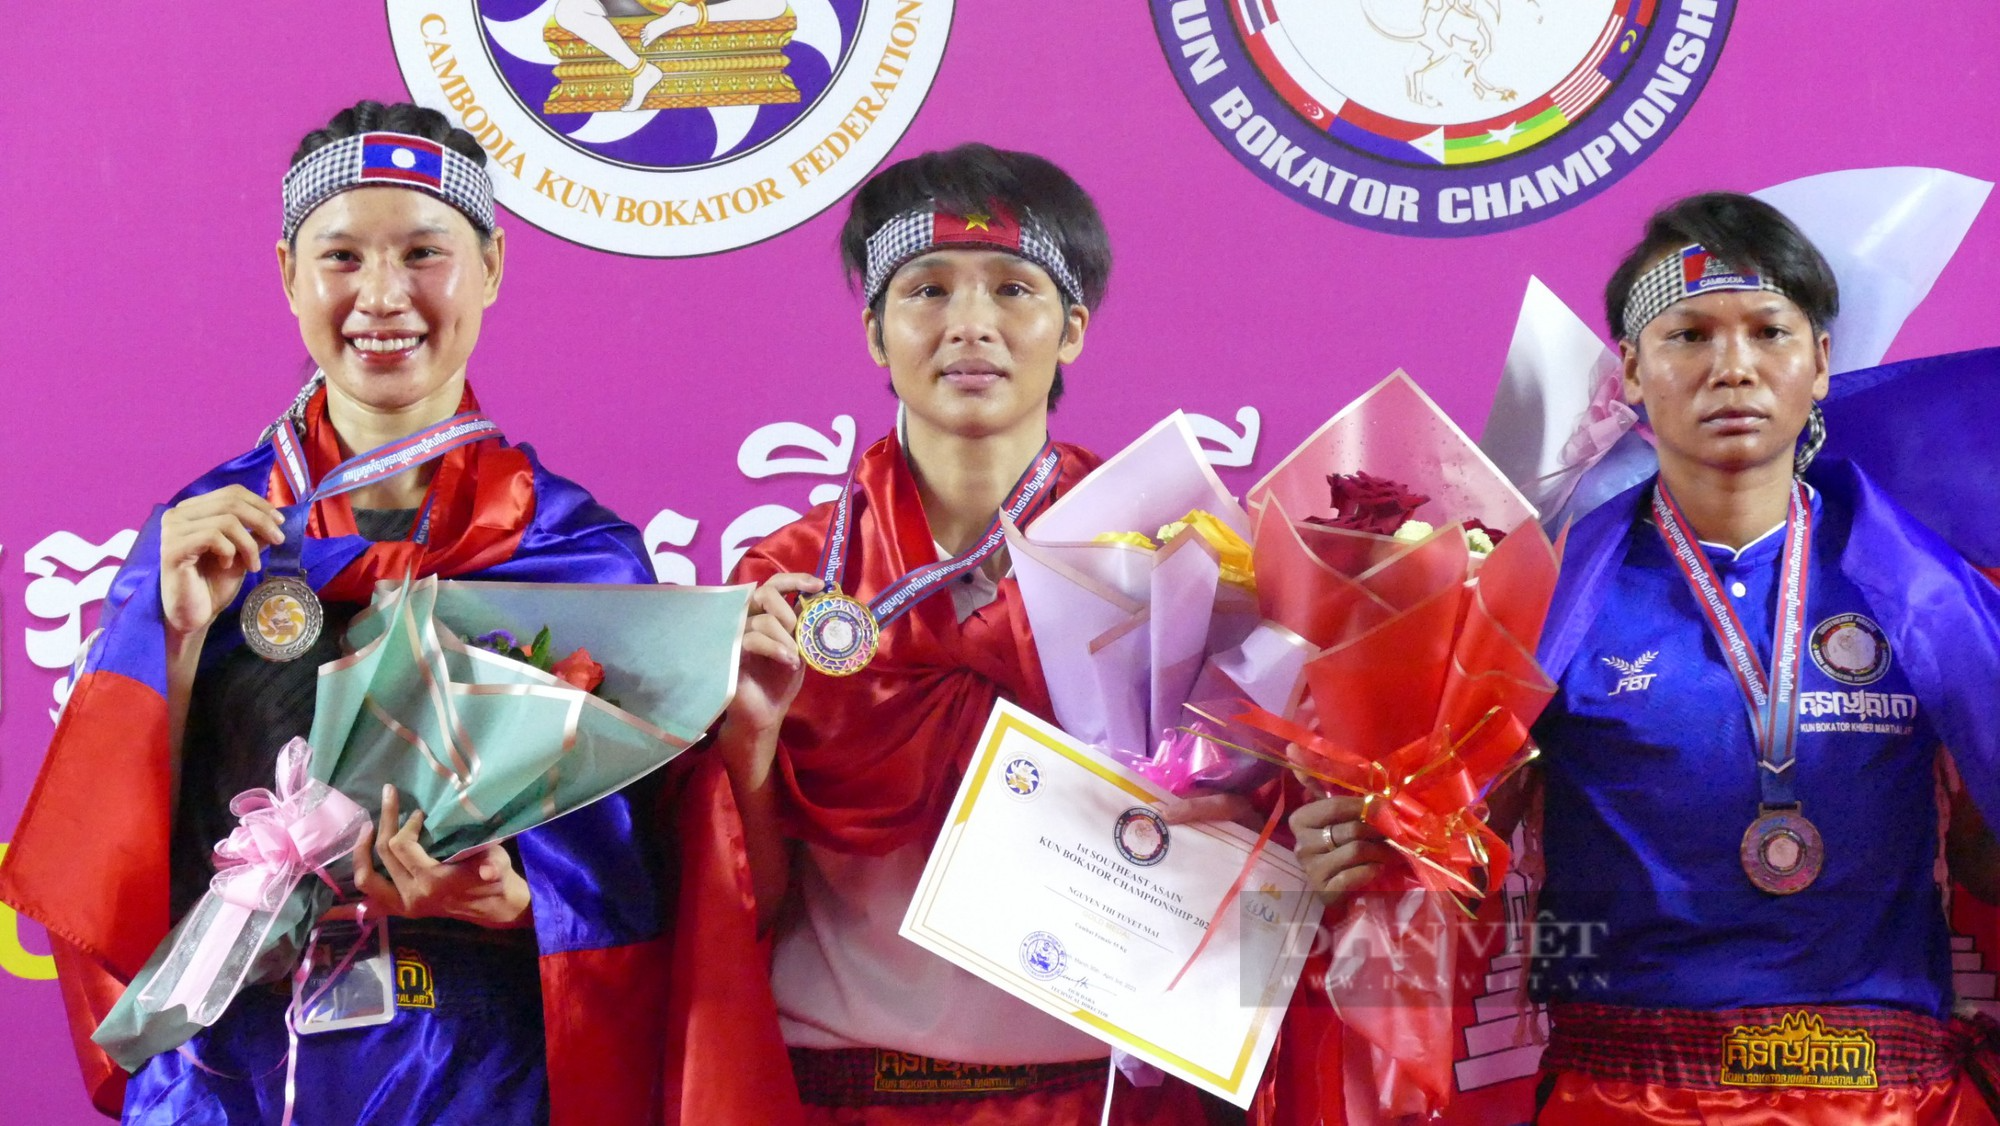 Việt Nam giành 3 HCV giải vô địch Kun Bokator tiền SEA Games 32 - Ảnh 4.